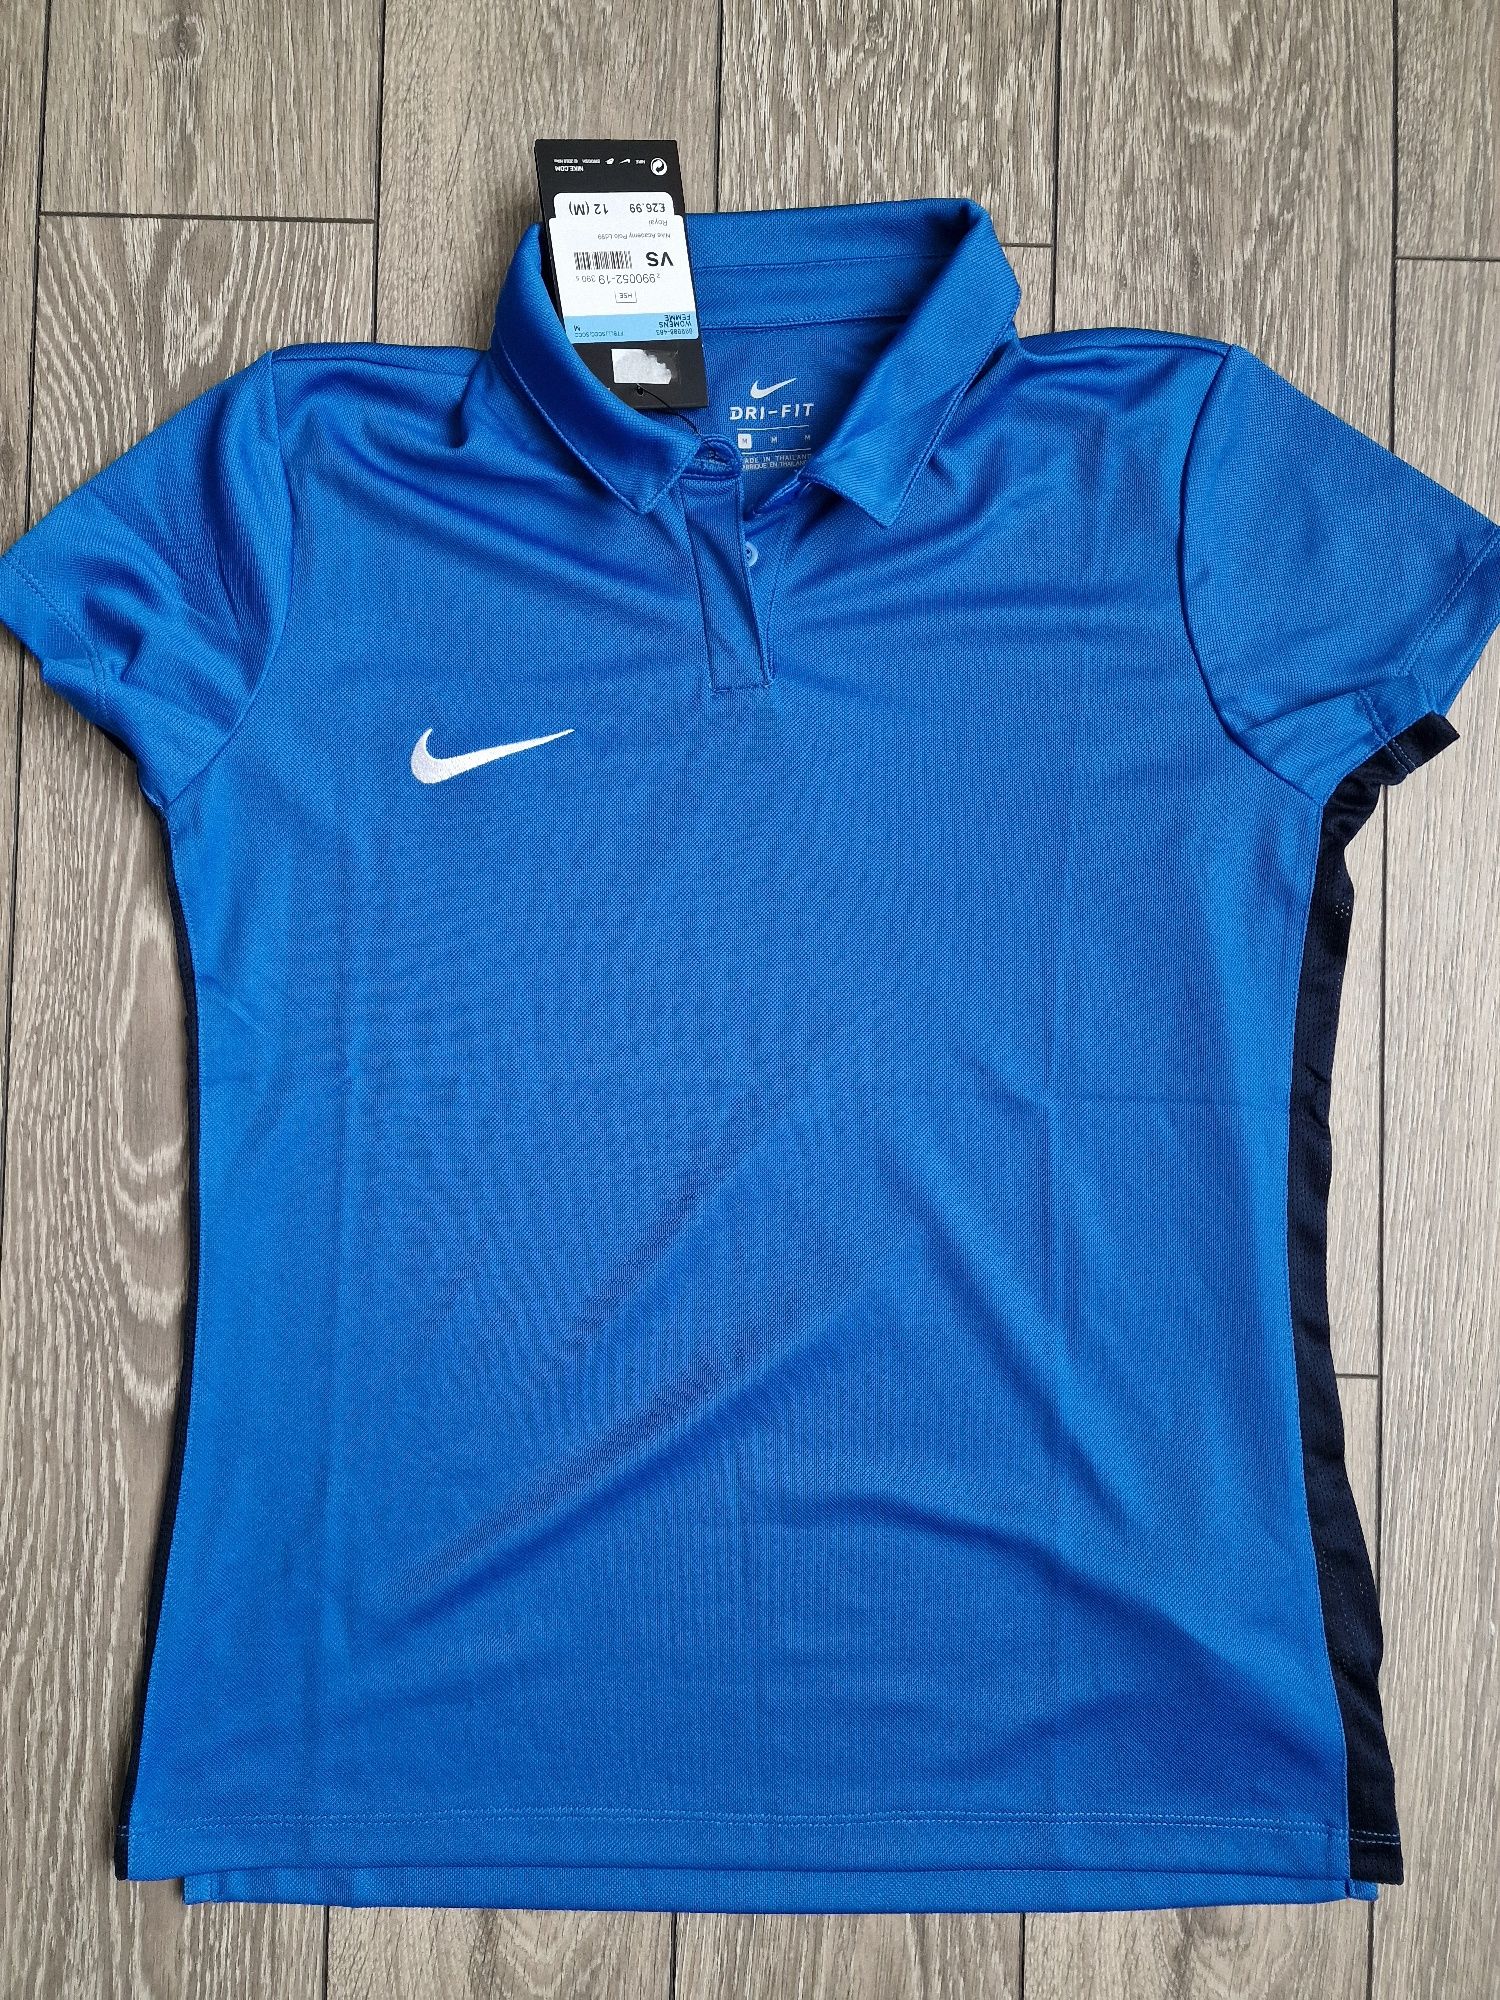 Vând tricouri Nike-Dri-Fit Noi